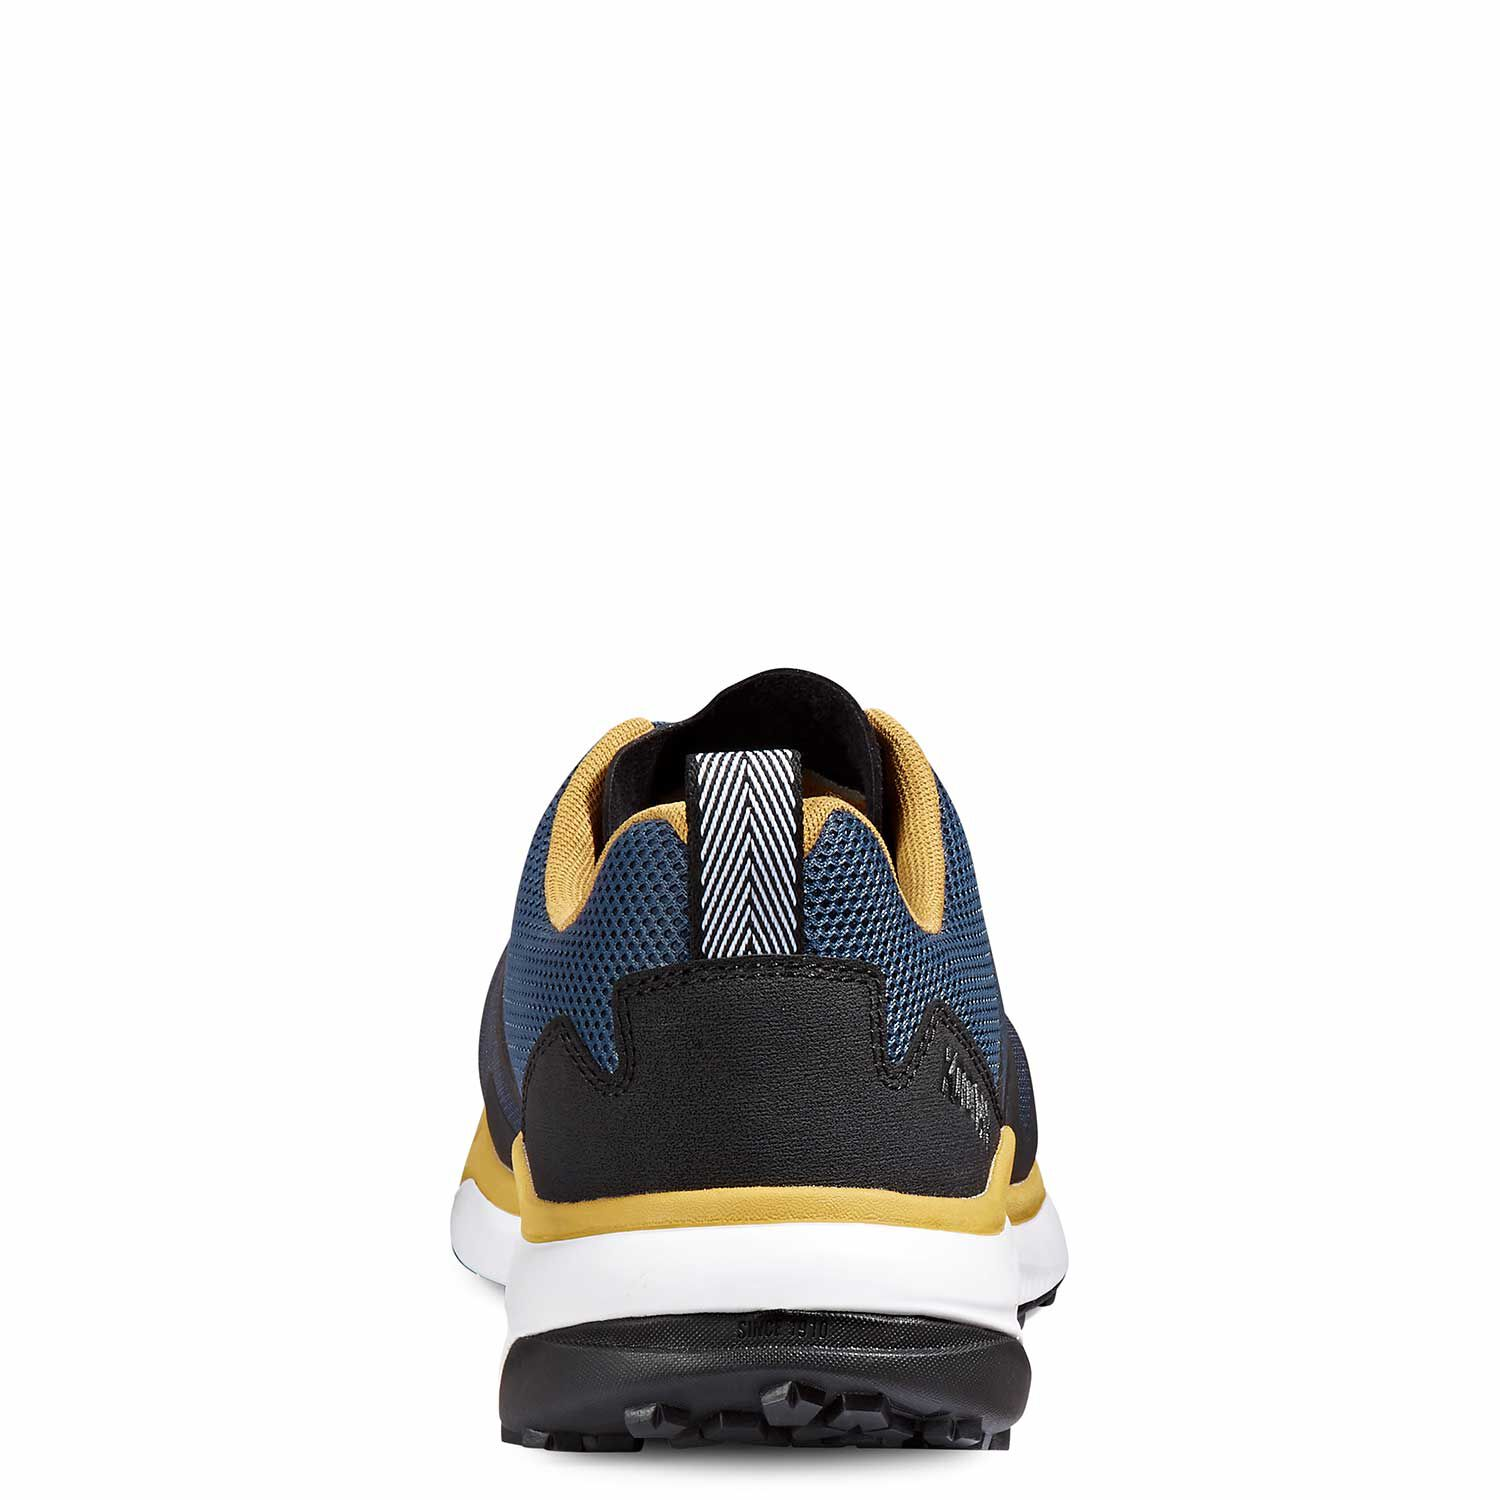 Men's Kodiak Quicktrail Low Nano Composite Toe Athletic Safety Work Shoe